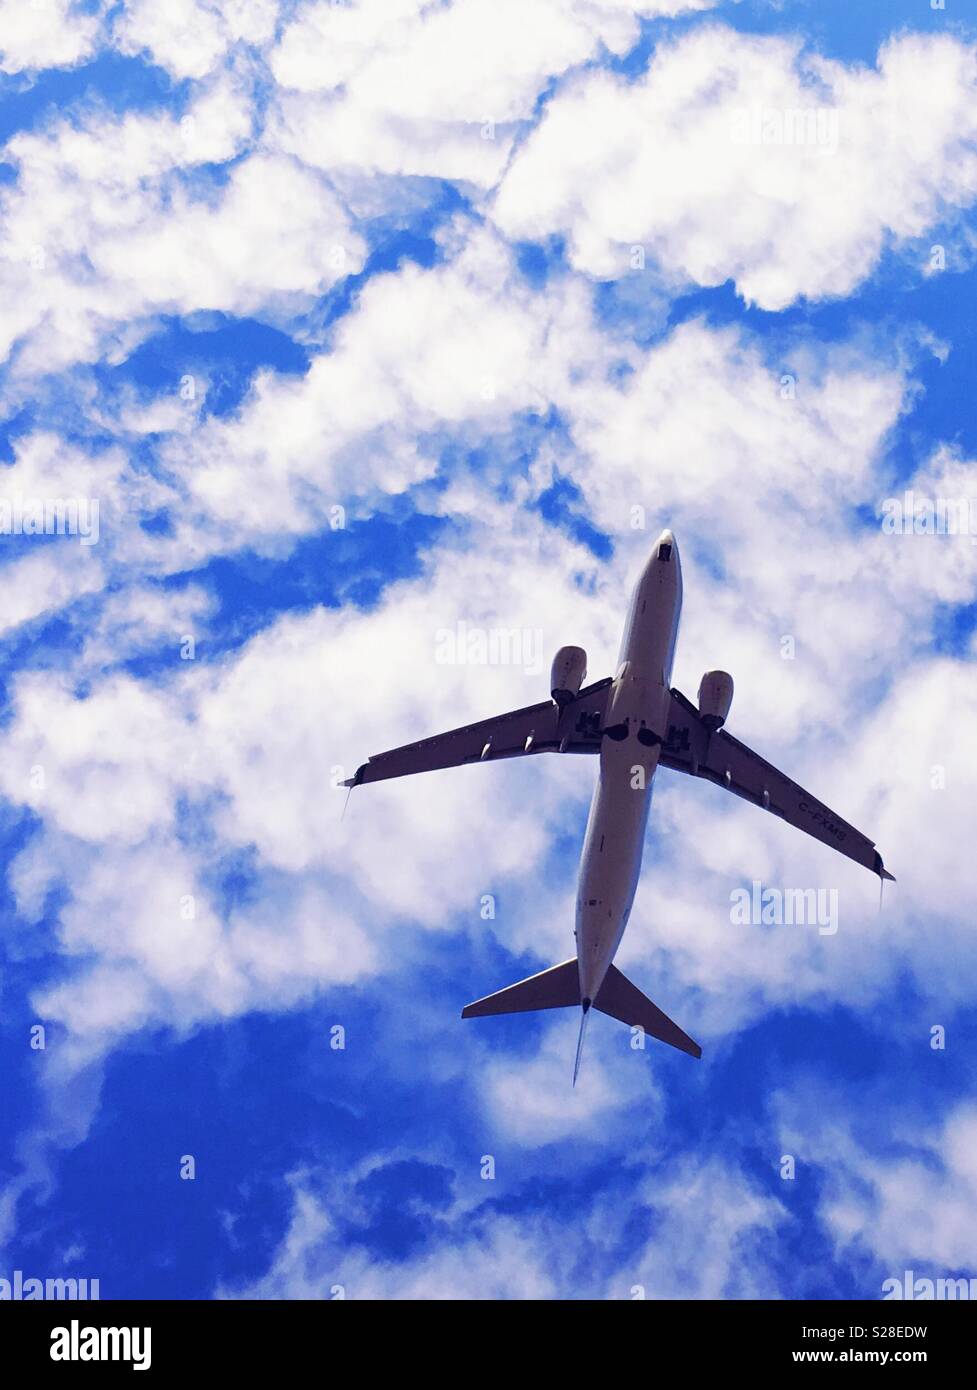 Pkw Flugzeug fotografiert von unten mit blauem Himmel und weißen Wolken im Hintergrund. Stockfoto